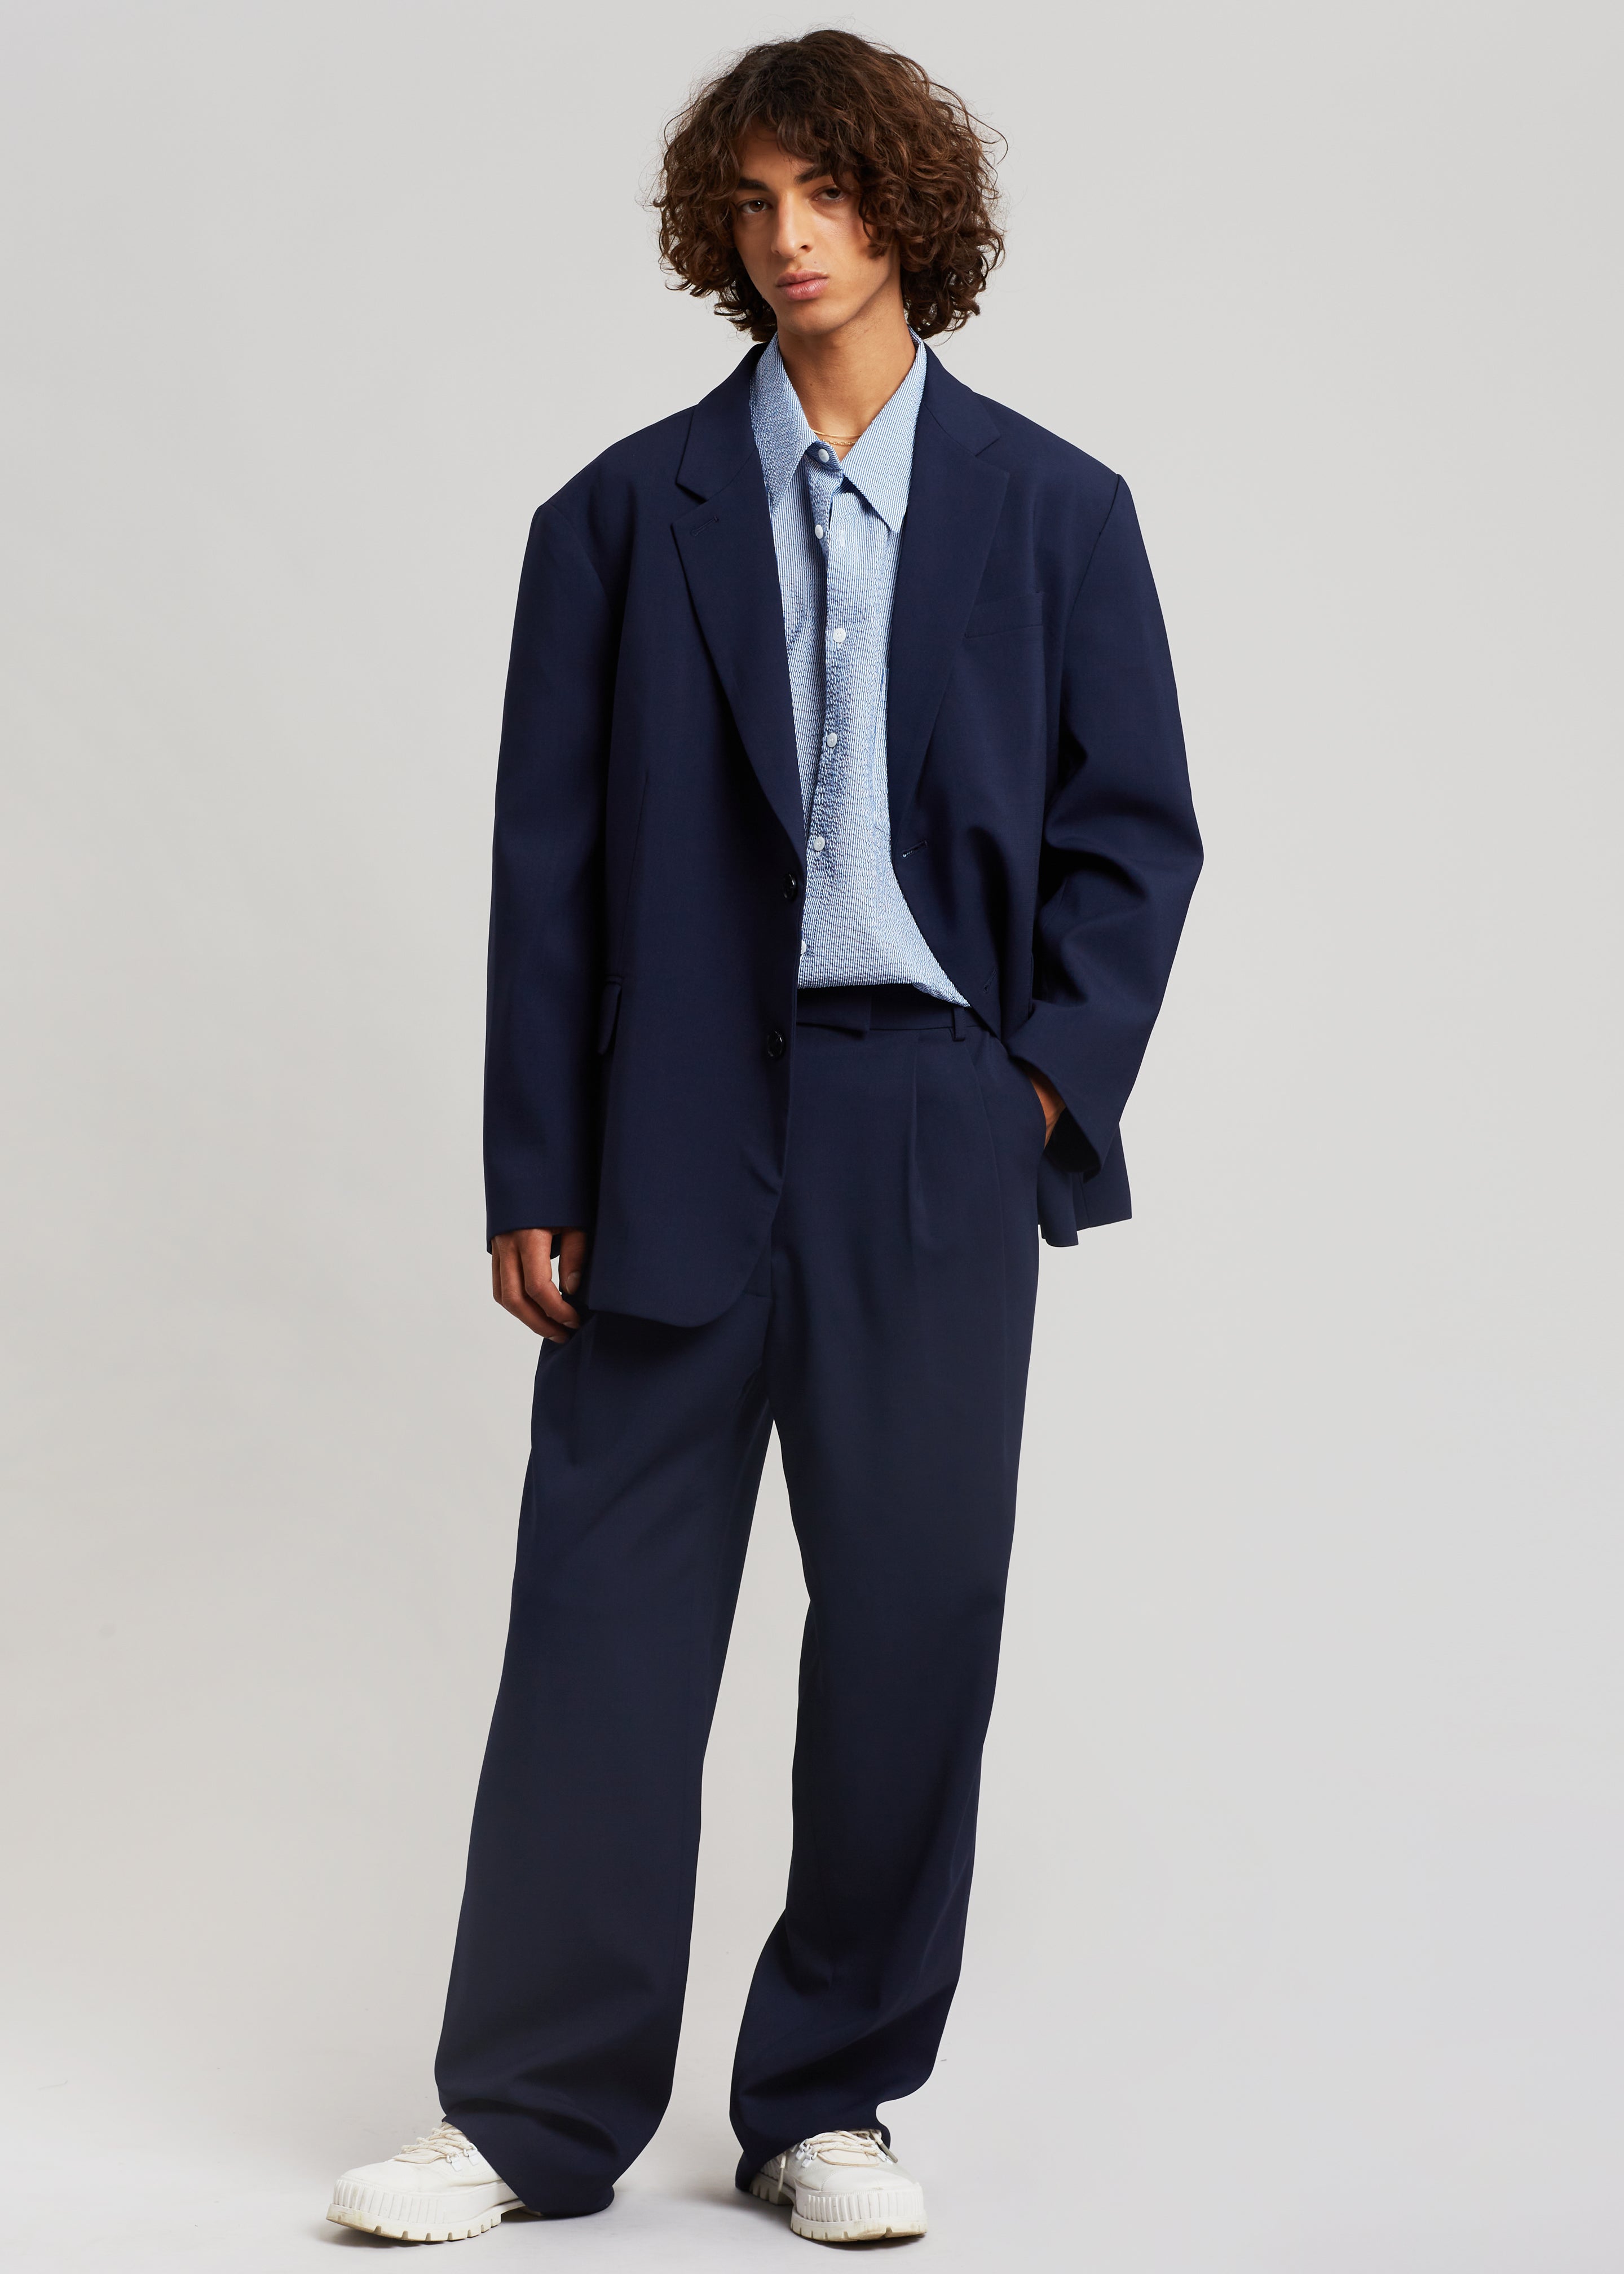 More Blue Favorites | Classy suits, Stylish mens suits, Suits men business